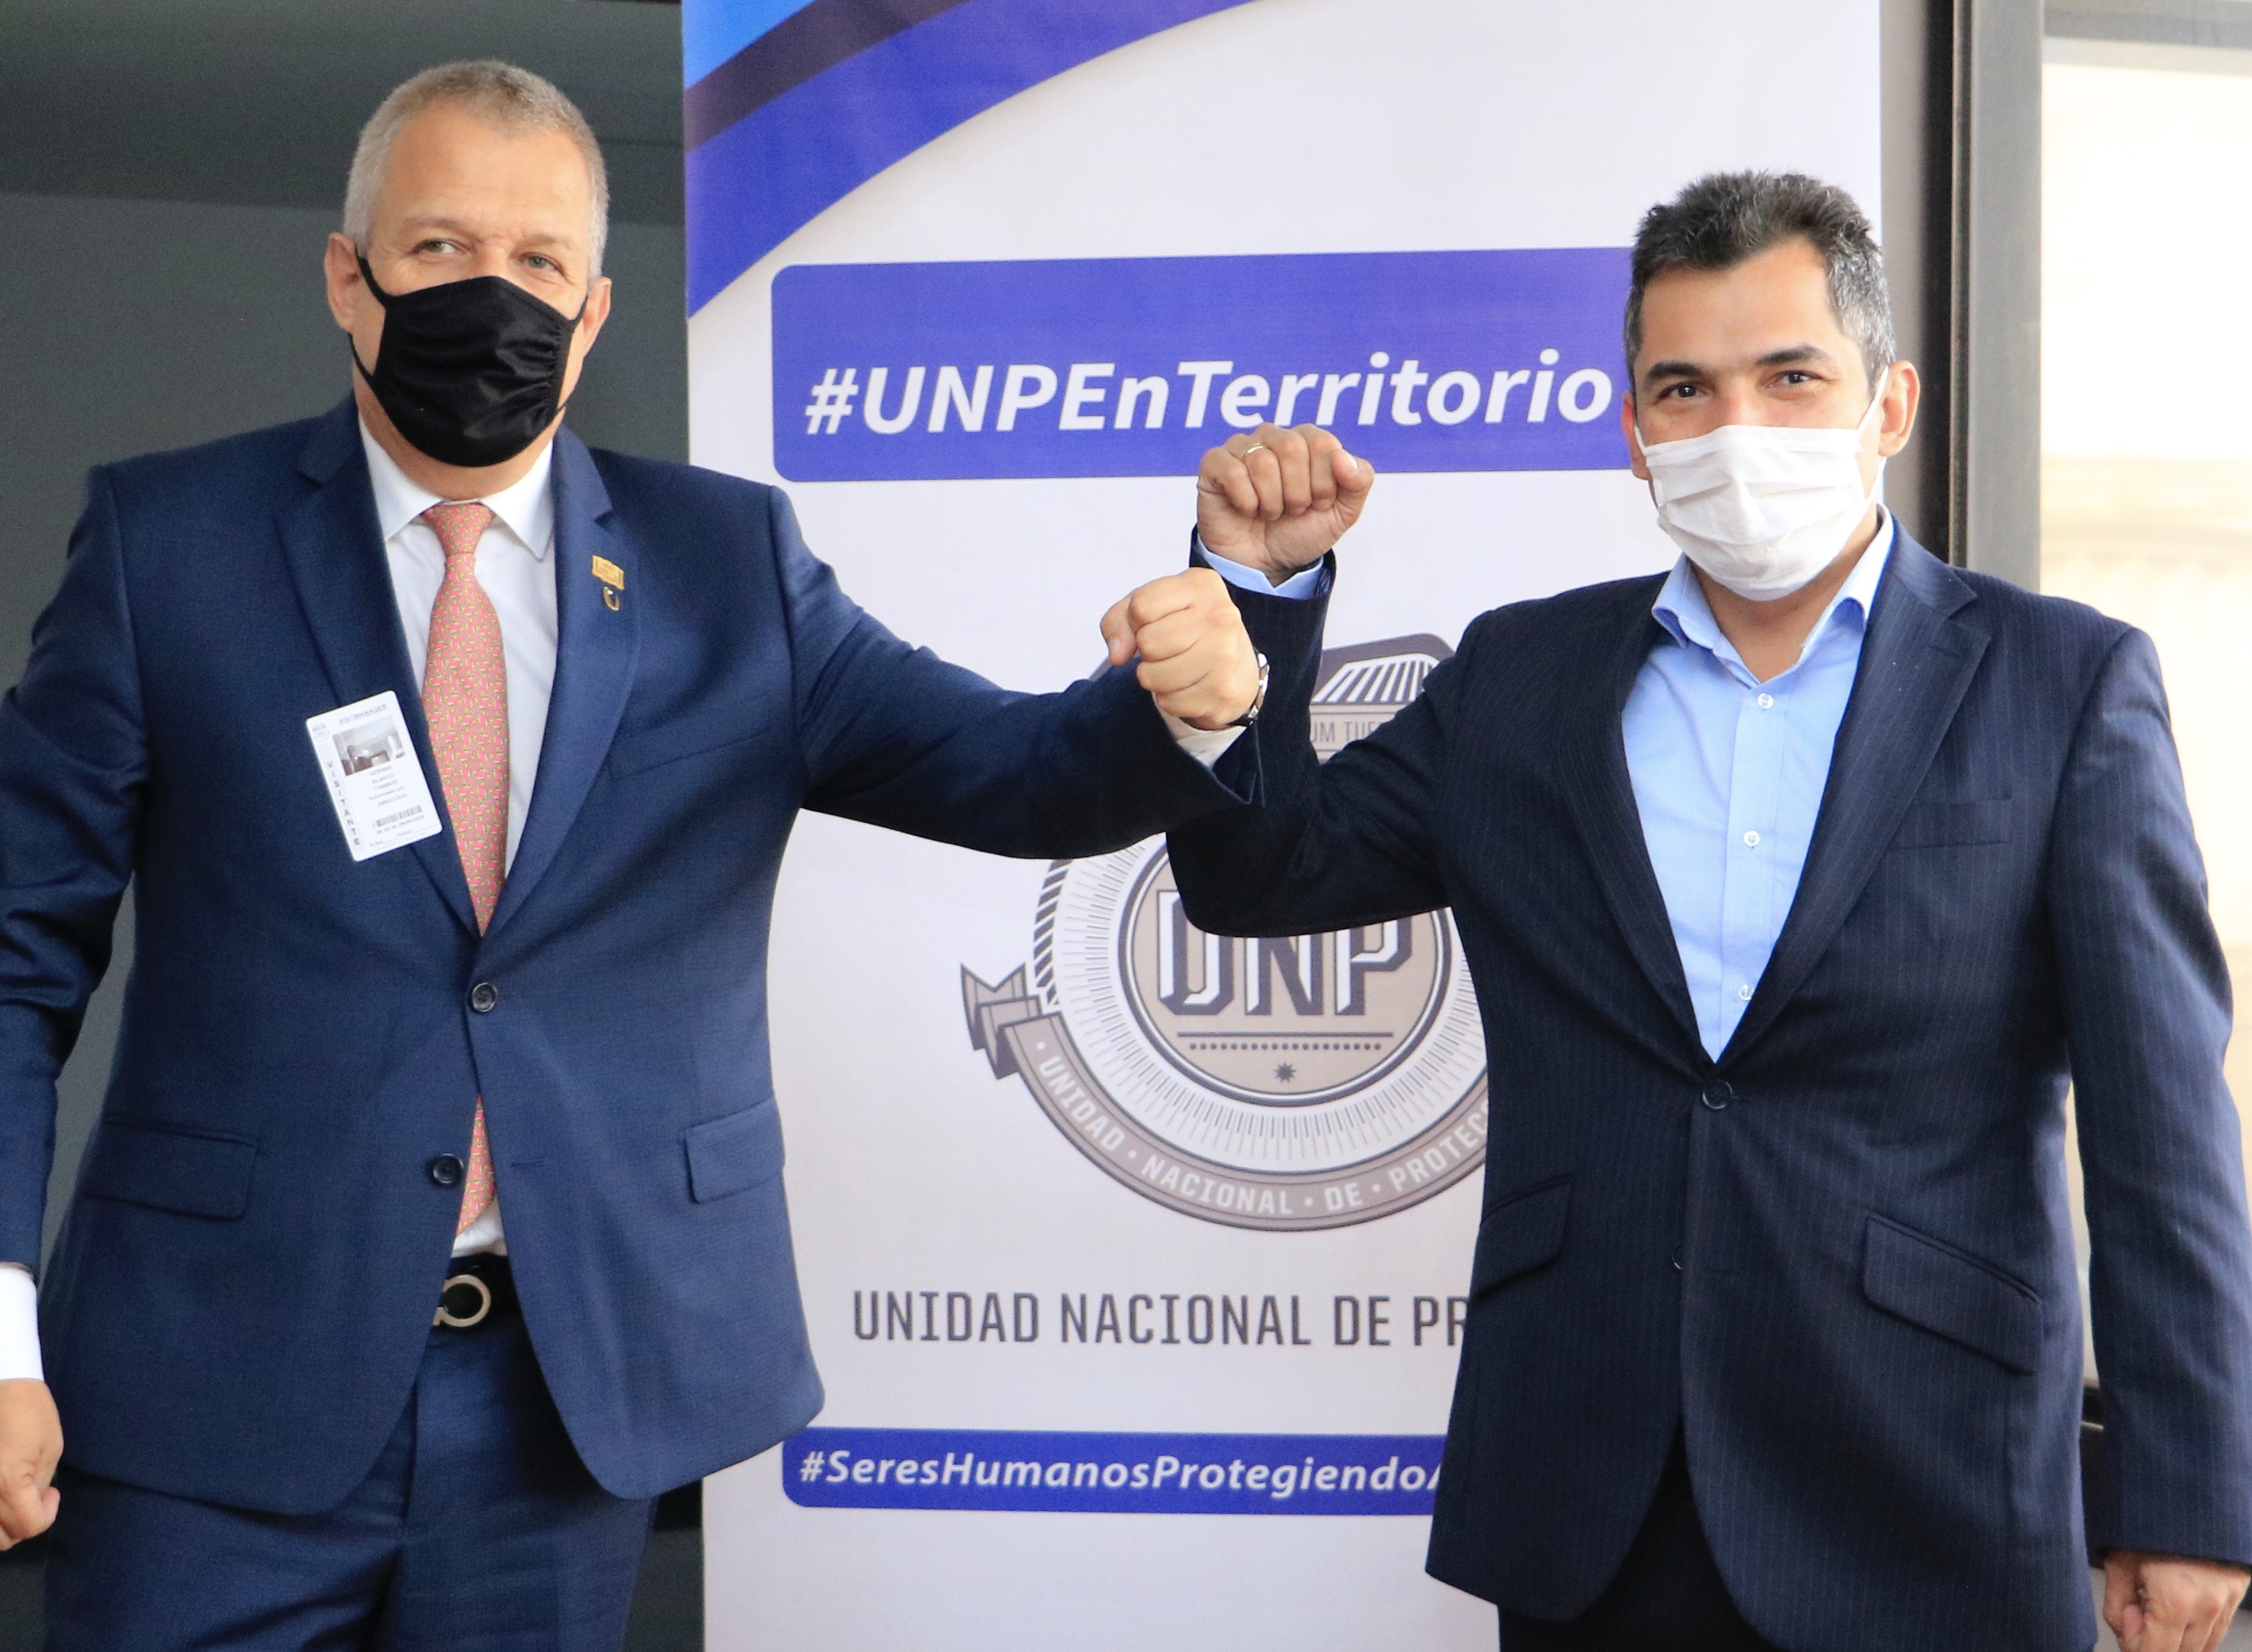 Imagen - Director de UNP y Presidente de la honorable Cámara de Representantes, Germán Blanco Álvarez